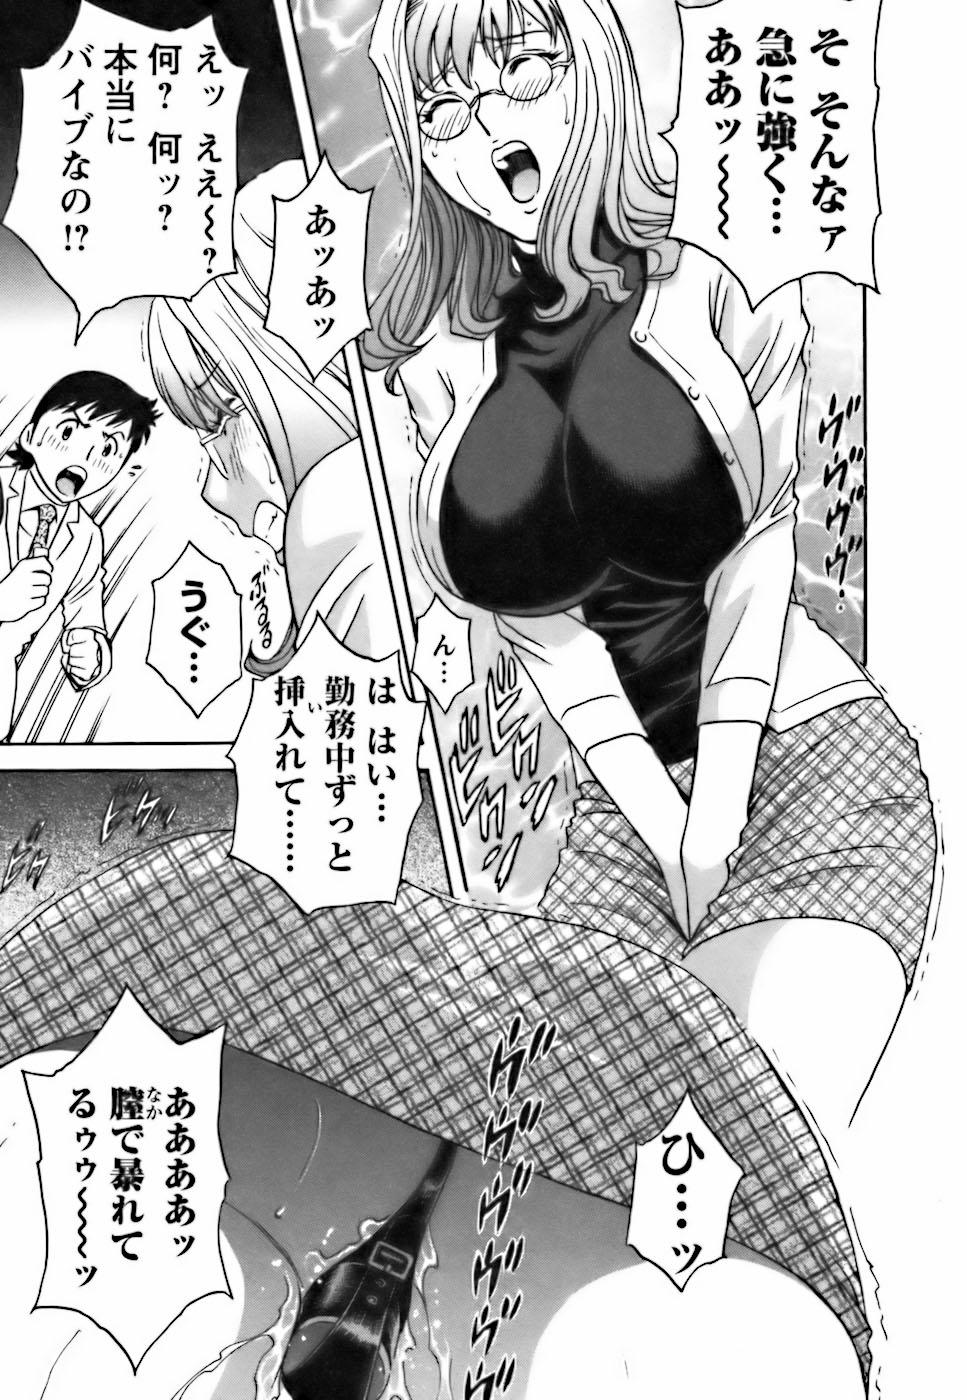 [Hidemaru] Mo-Retsu! Boin Sensei (Boing Boing Teacher) Vol.3 96